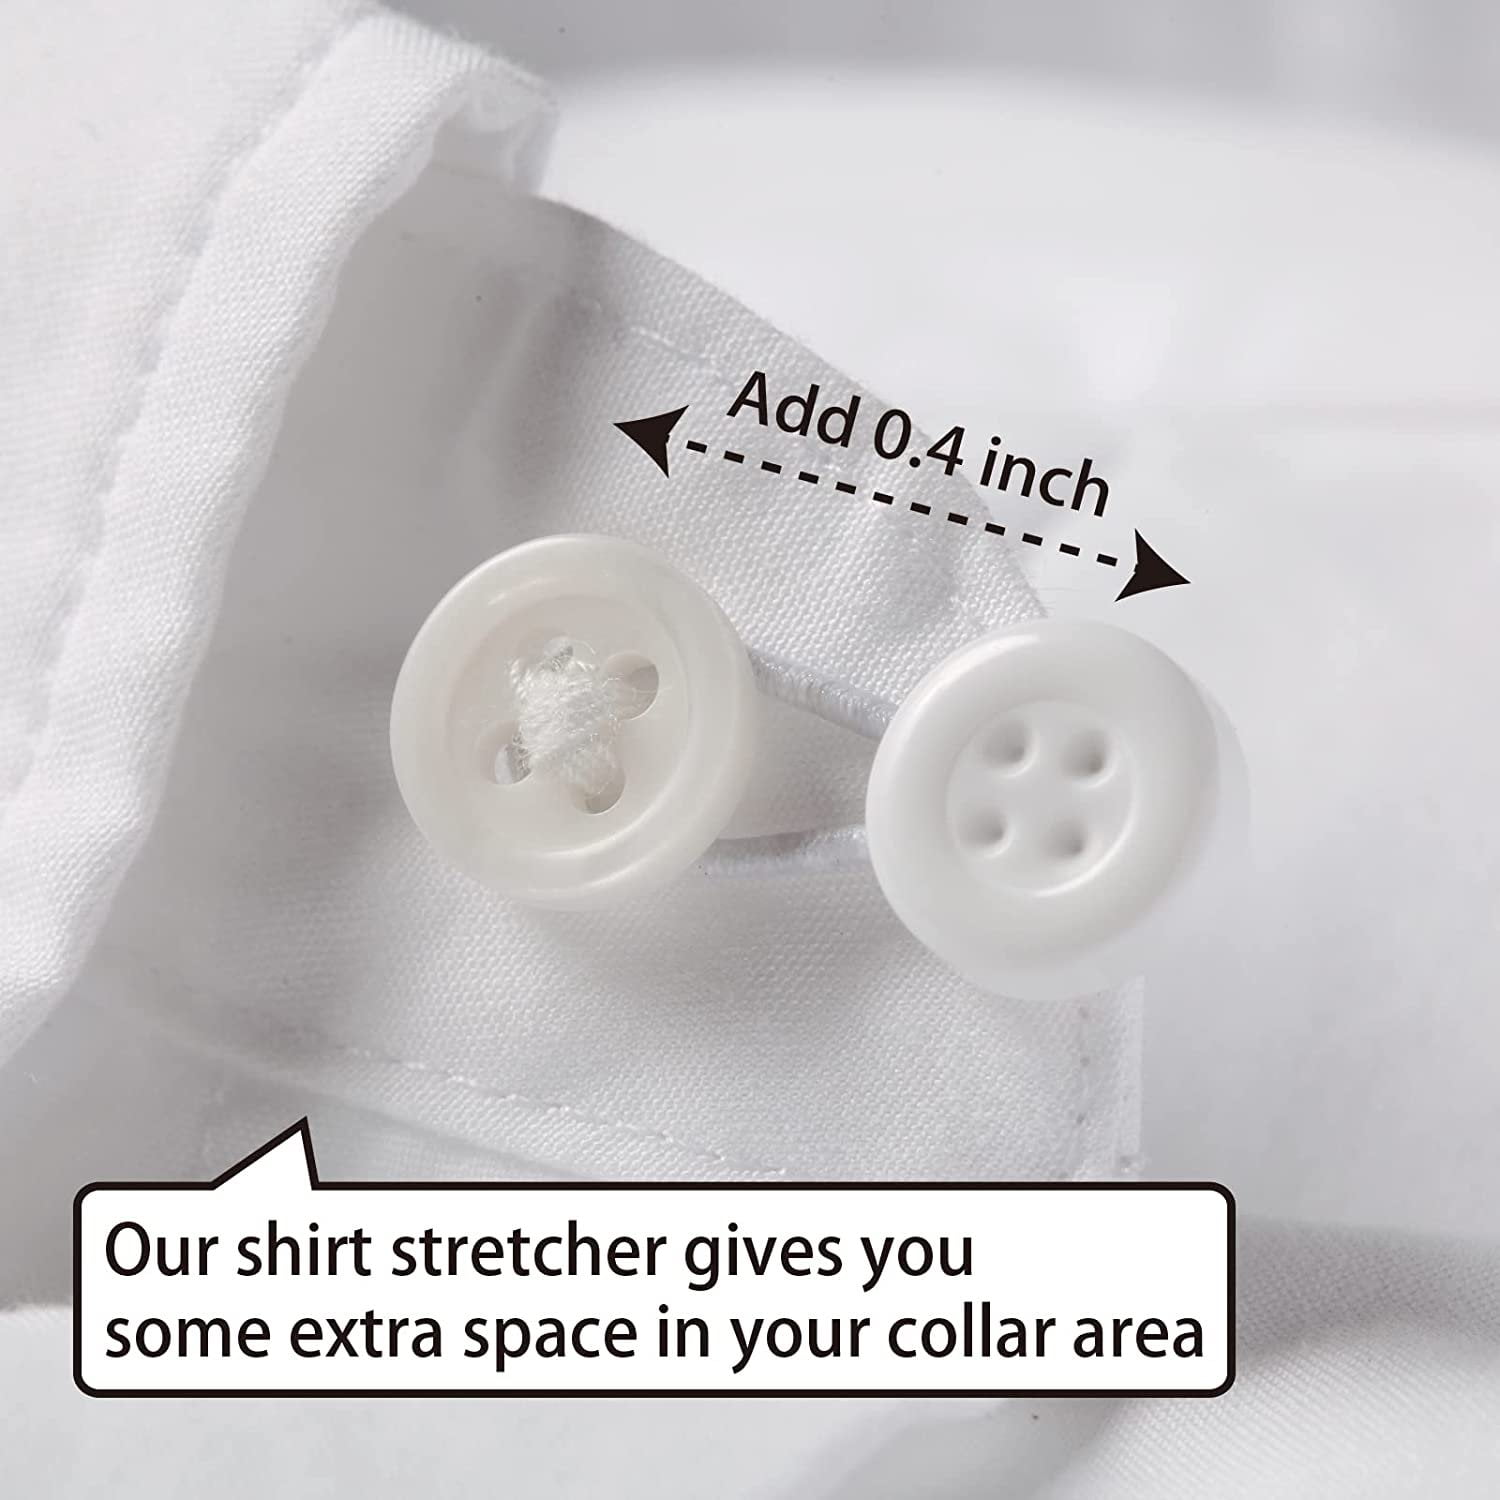 Trianu 6 Pcs Shirt Collar Button Extenders, Elastic Collar Extenders for Mens Shirts, Dress Shirt Tie Neck Collar Button Expanders for Expanding